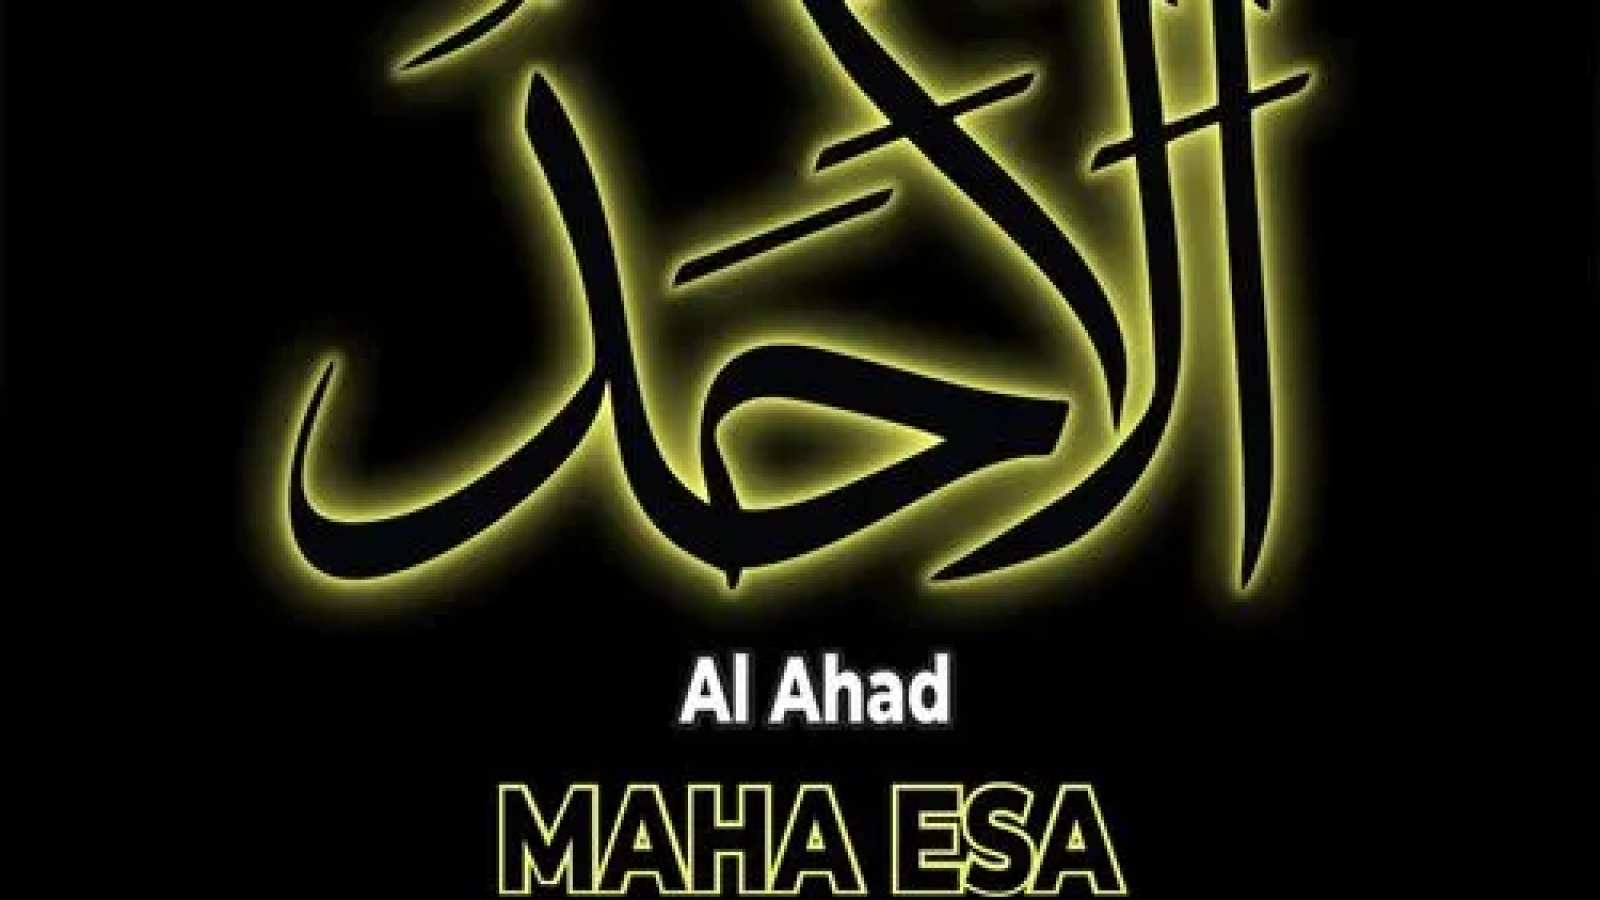 Al-Ahad